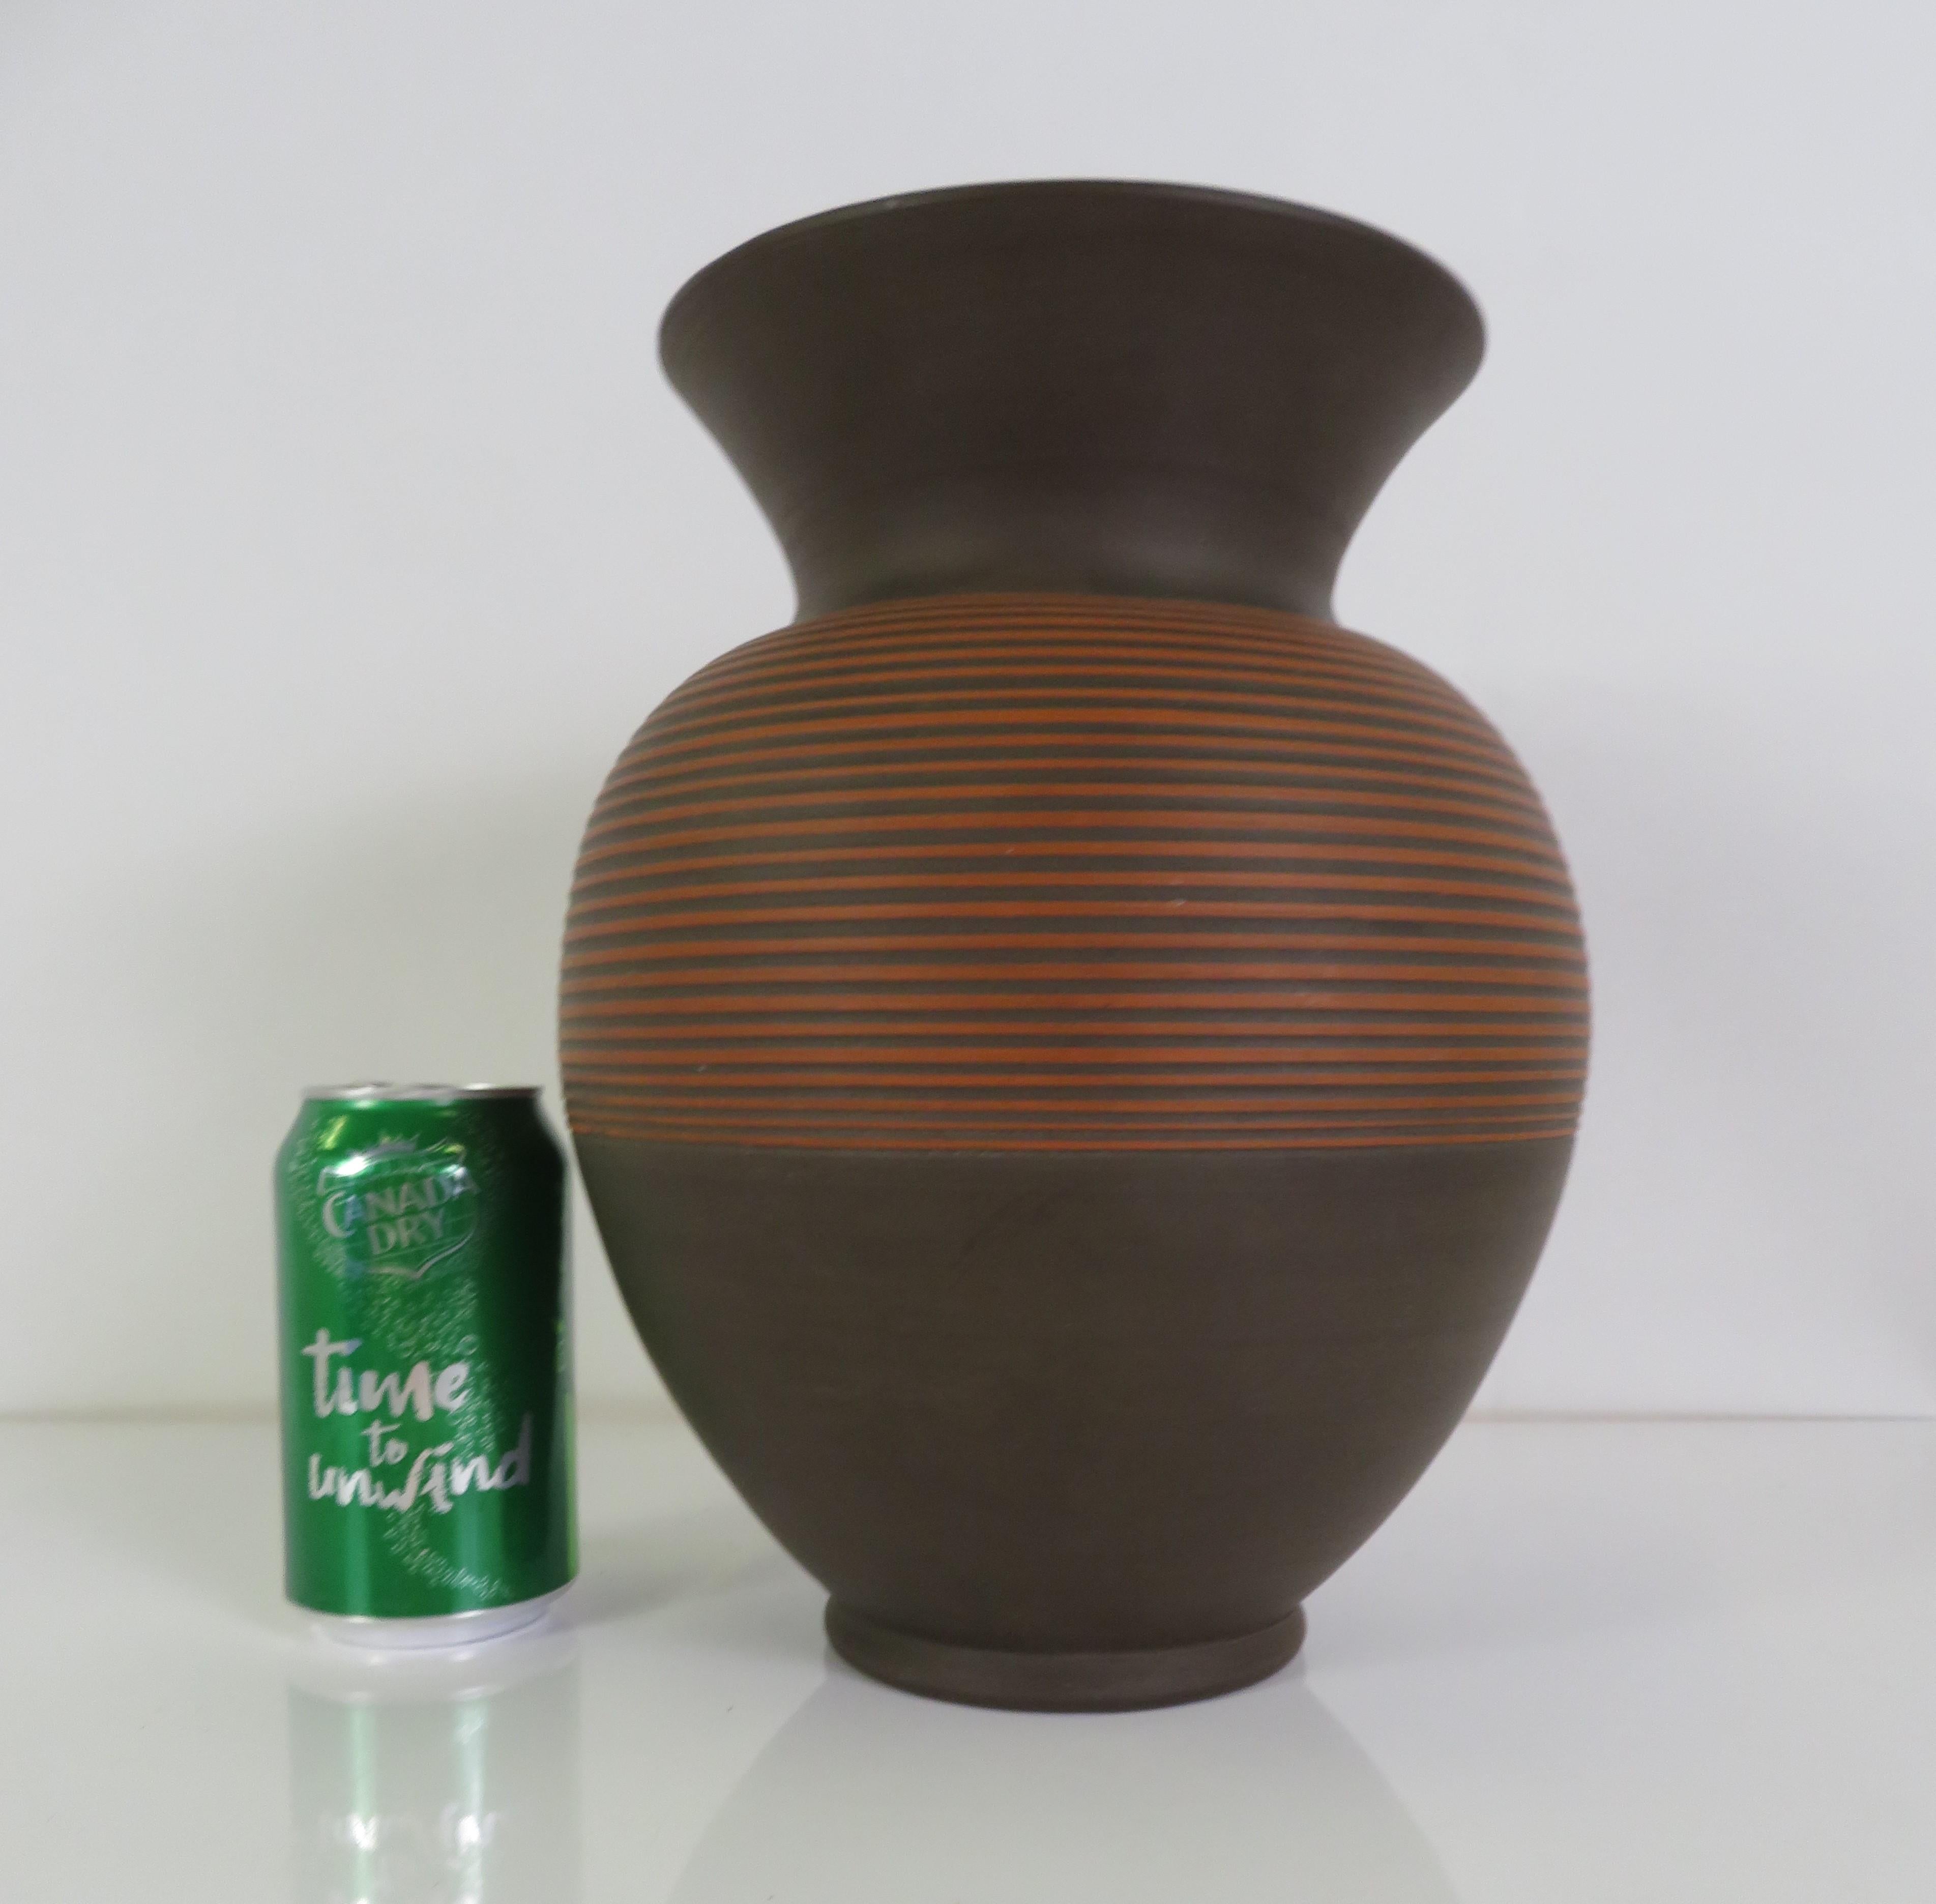 Grand vase Klinker en poterie allemande moderne du milieu du siècle 1960.  Le corps du vase est peint avec une glaçure brun chocolat foncé et des bandes incisées dans l'argile découvrent l'argile rouge brique sous-jacente. Incisé sur le fond plat